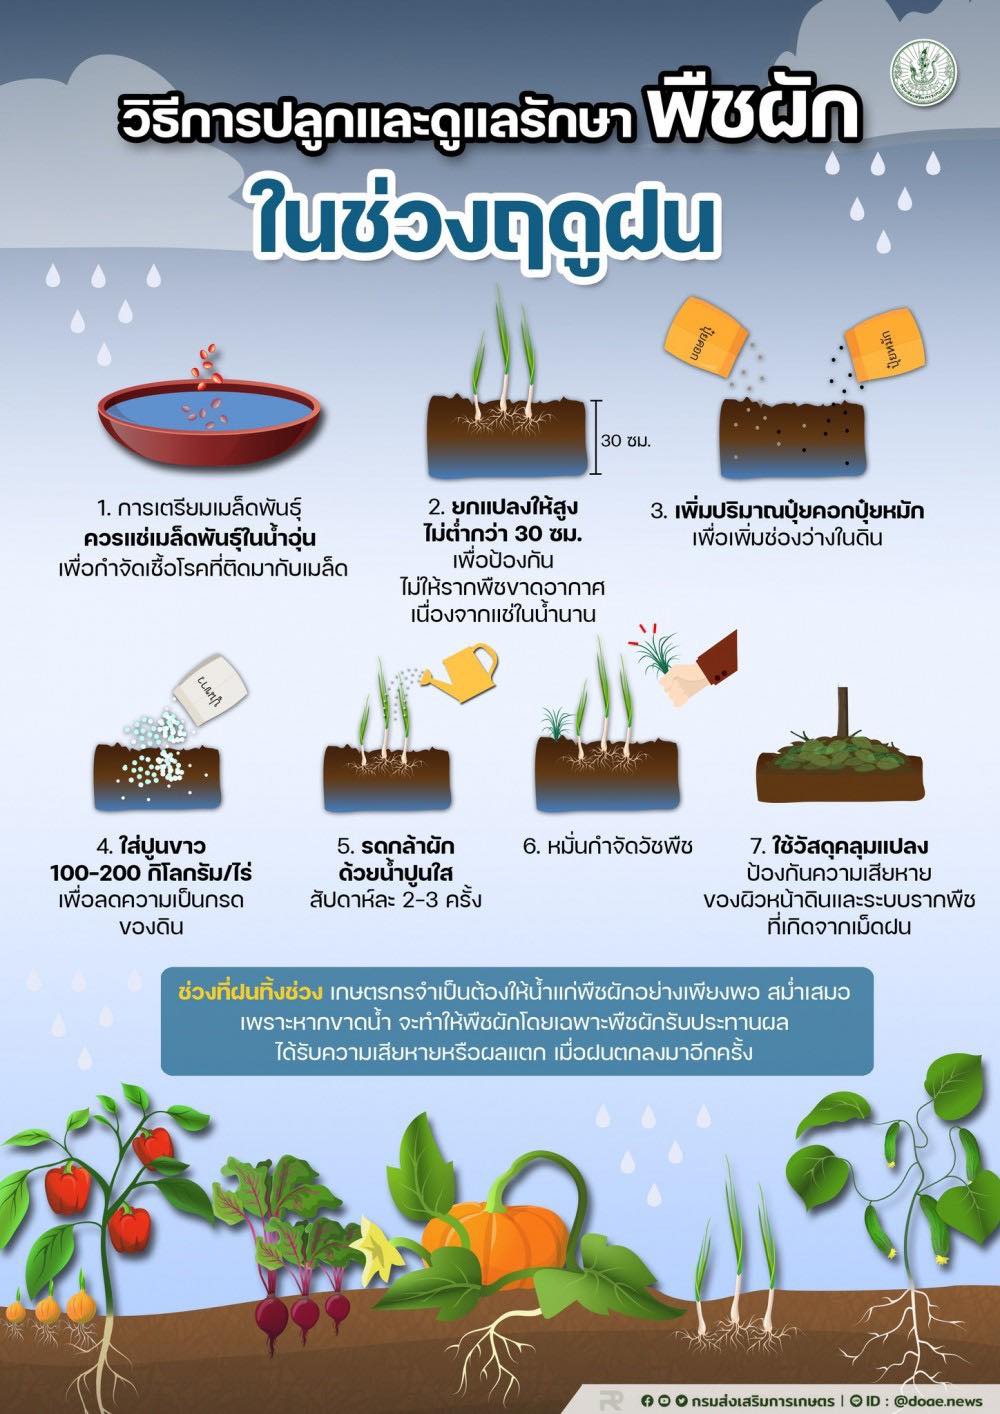 วิธีการปลูกและดูแลรักษาพืชผักในช่วงฤดูฝน